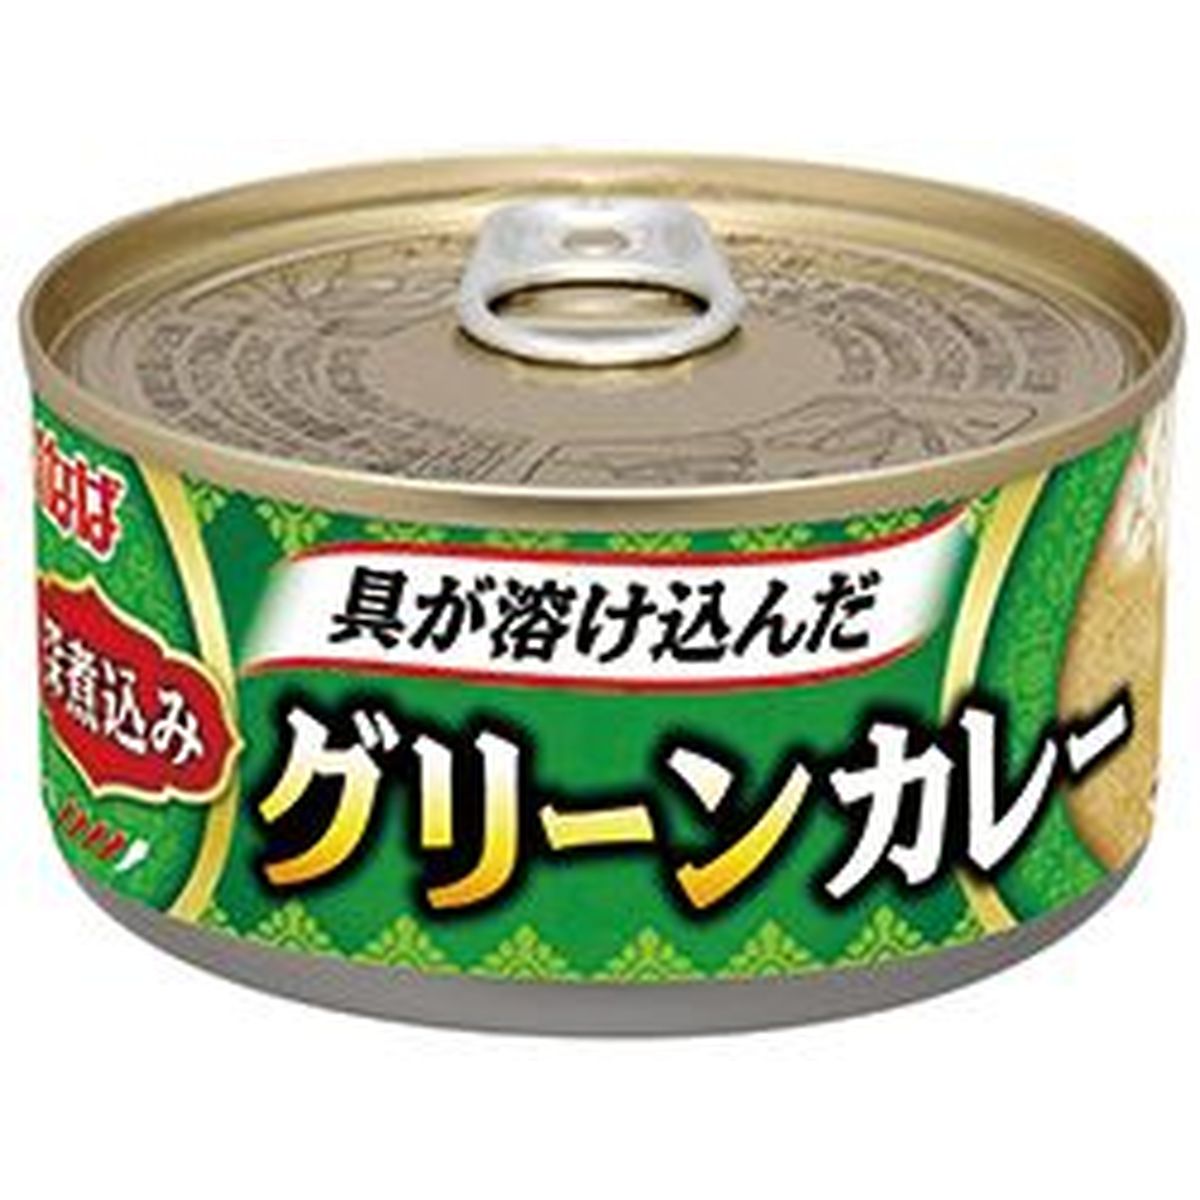 【24個入リ】イナバ食品 深煮込ミグリーンカレー 165g